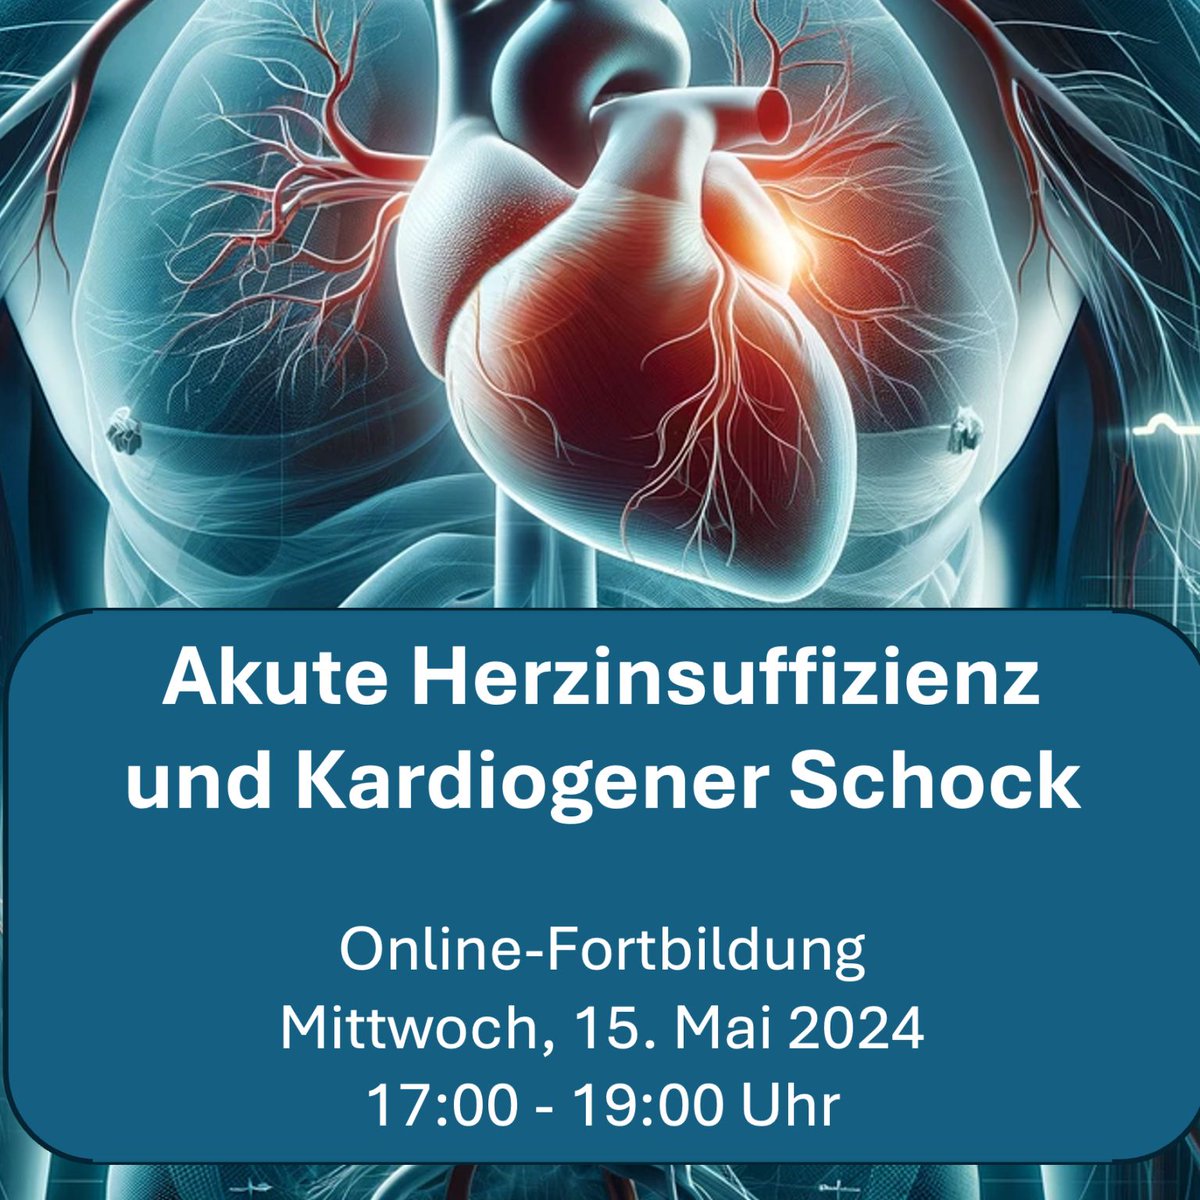 Online-#Fortbildung ➡ Akute #Herzinsuffizienz und kardiogener #Schock am ➡️15. Mai 2024. Die Veranstaltung ist Teil unserer Reihe '#Herzinsuffizienz aktuell' und bietet Einblicke in die neuesten Therapieansätze und Managementstrategien. Infos➡️ lmy.de/DRxPK